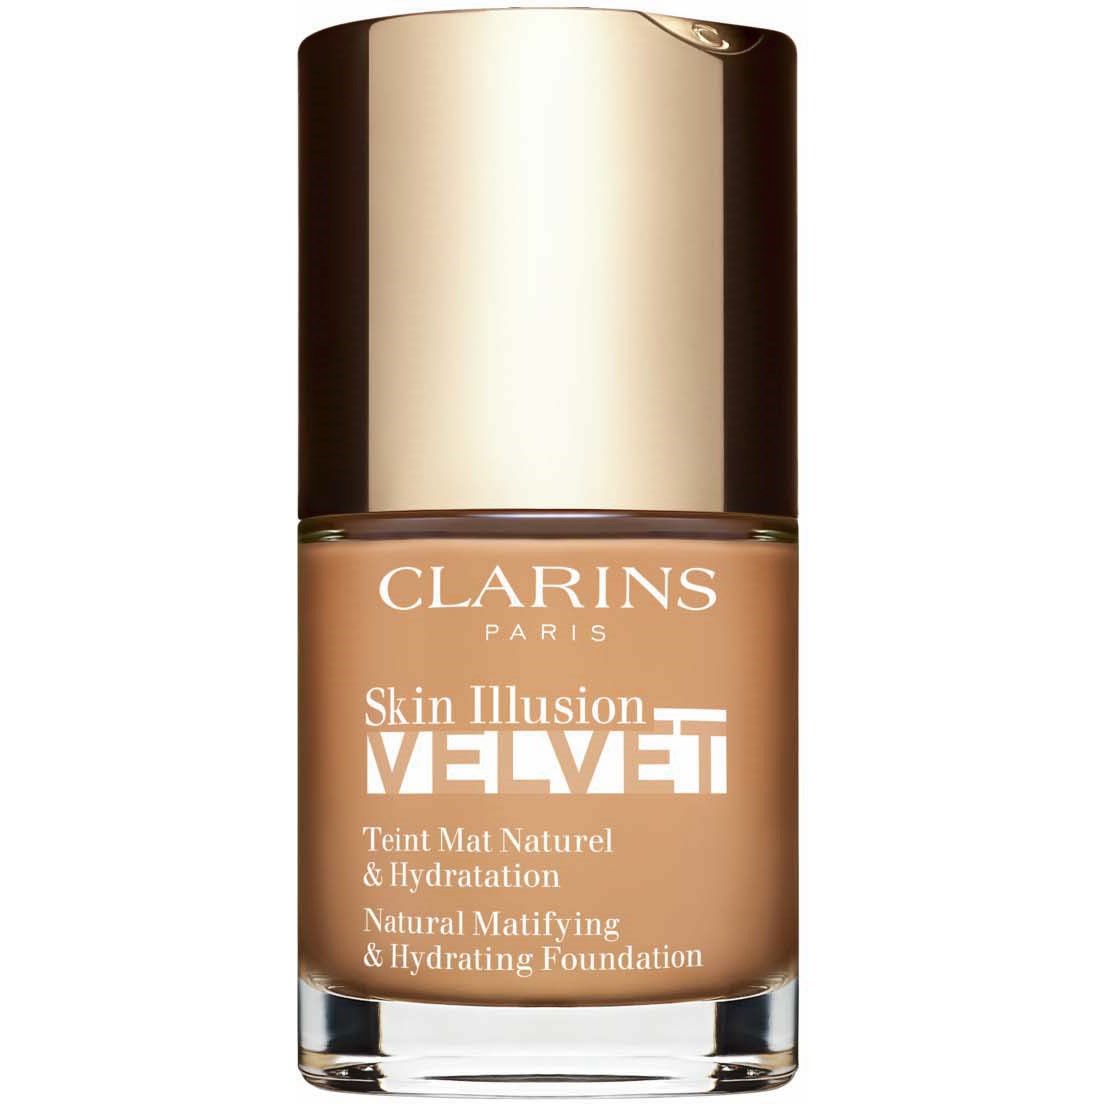 Bilde av Clarins Skin Illusion Velvet 111n Auburn